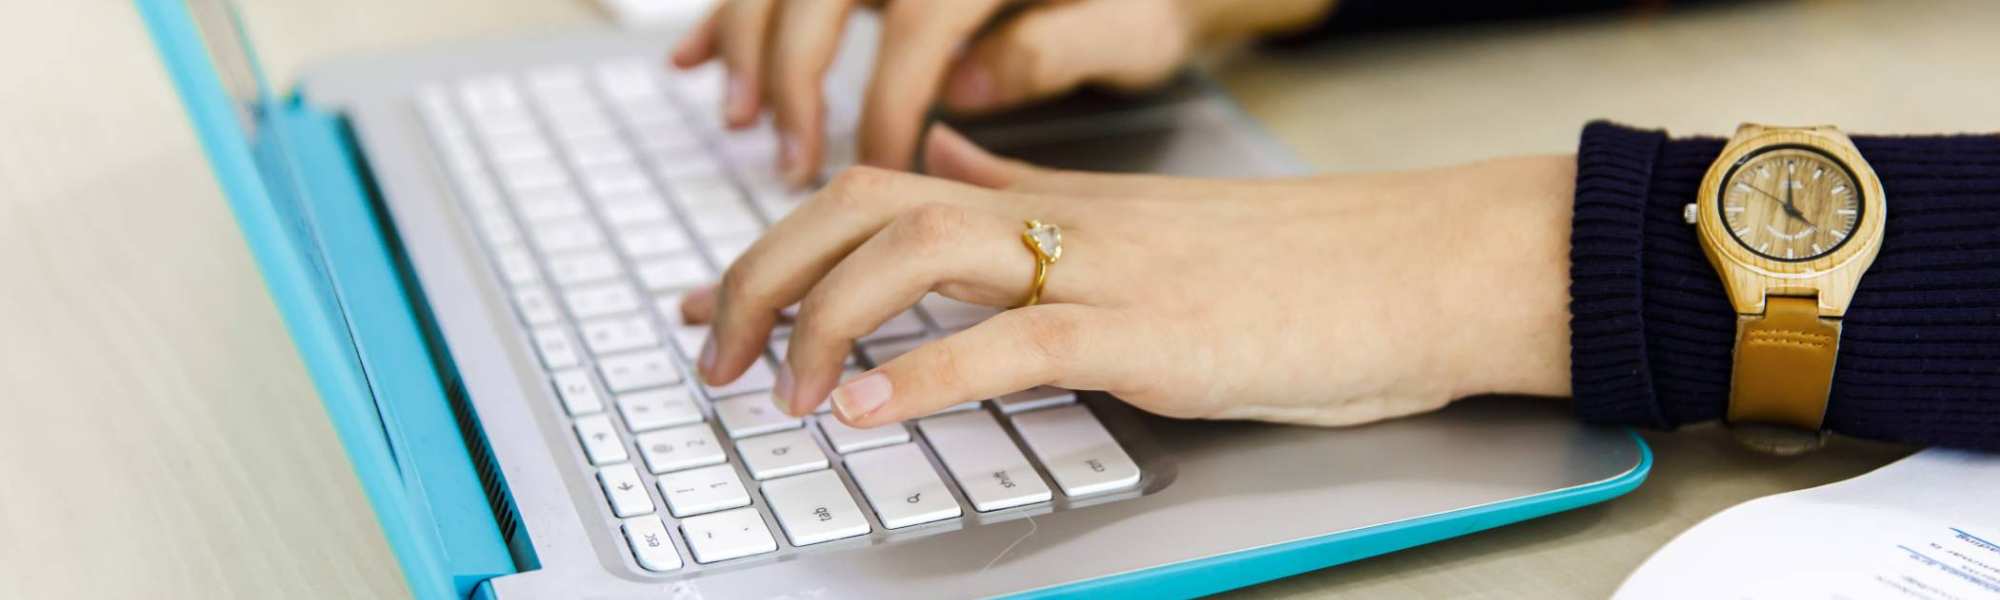 30476 Twee vrouwenhanden typen op het toetsenbord van haar laptop.